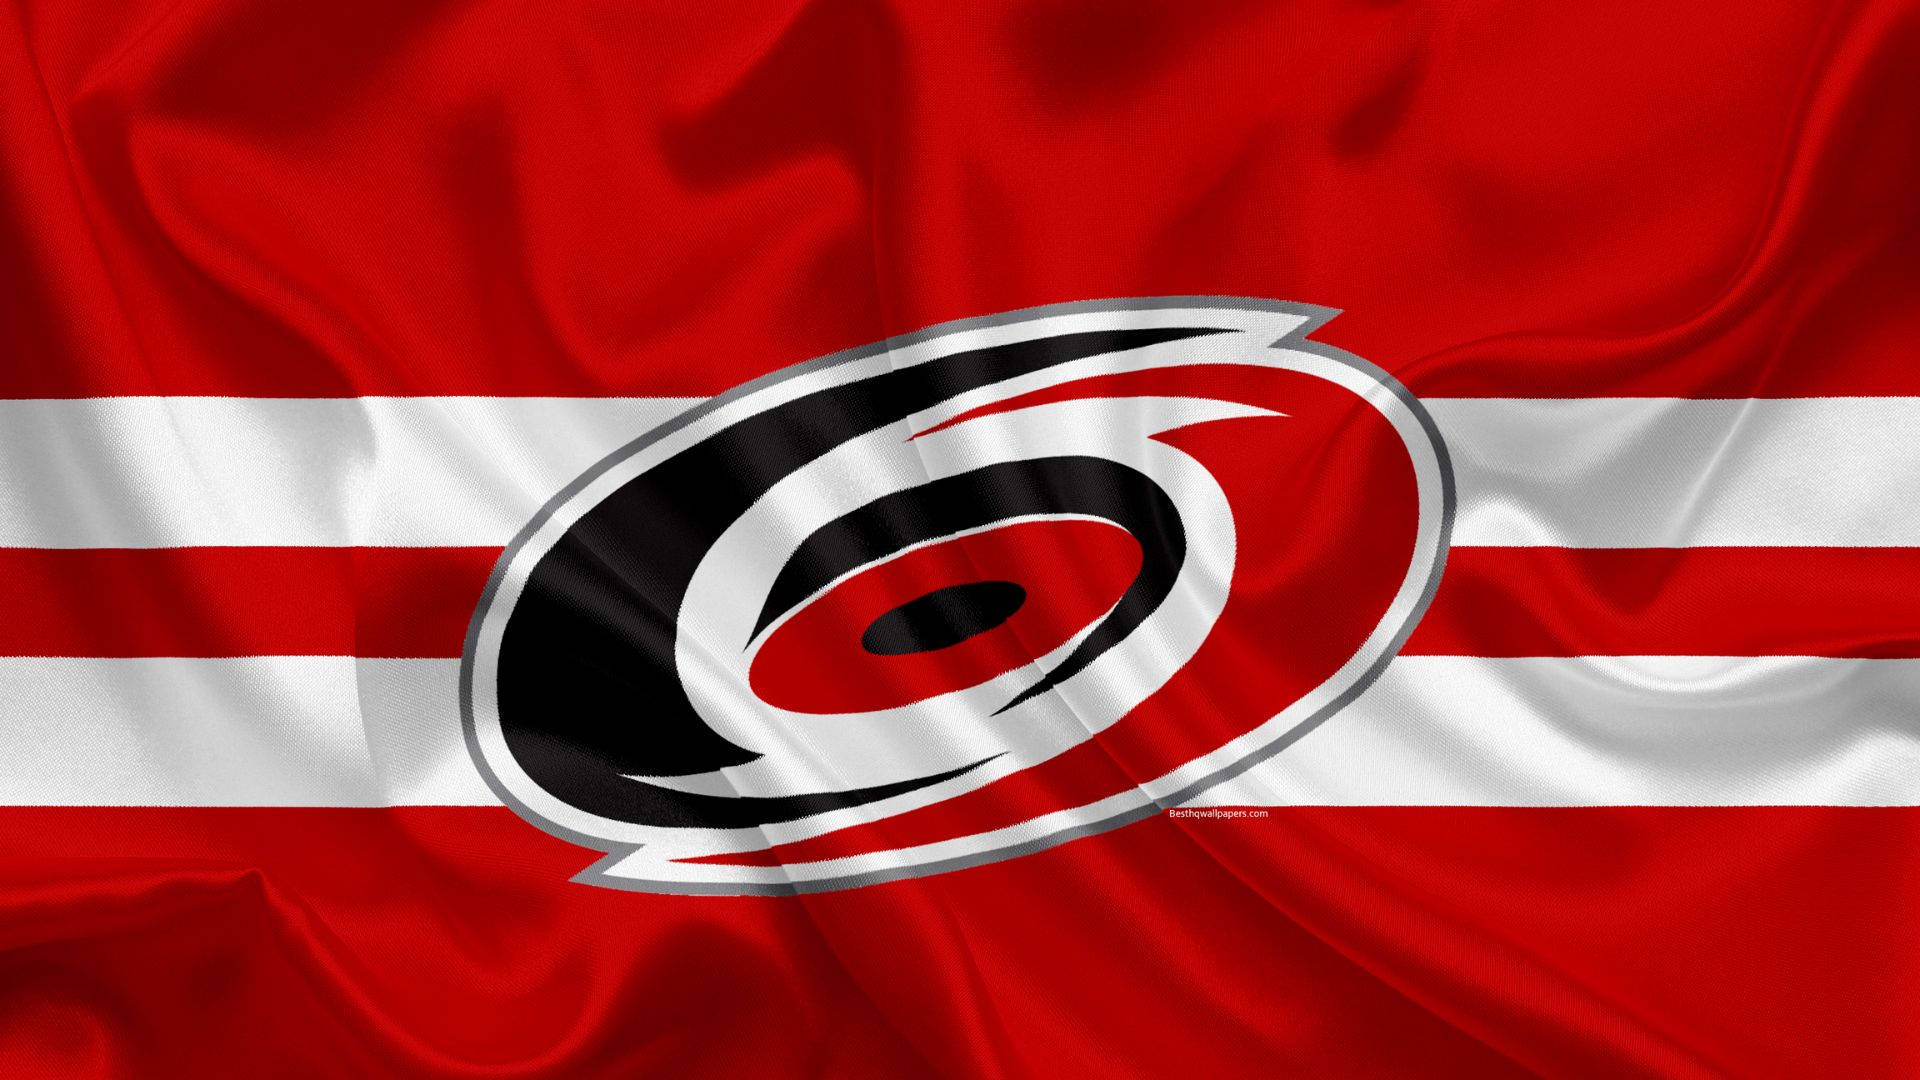 Wavy Carolina Hurricanes Logo Background